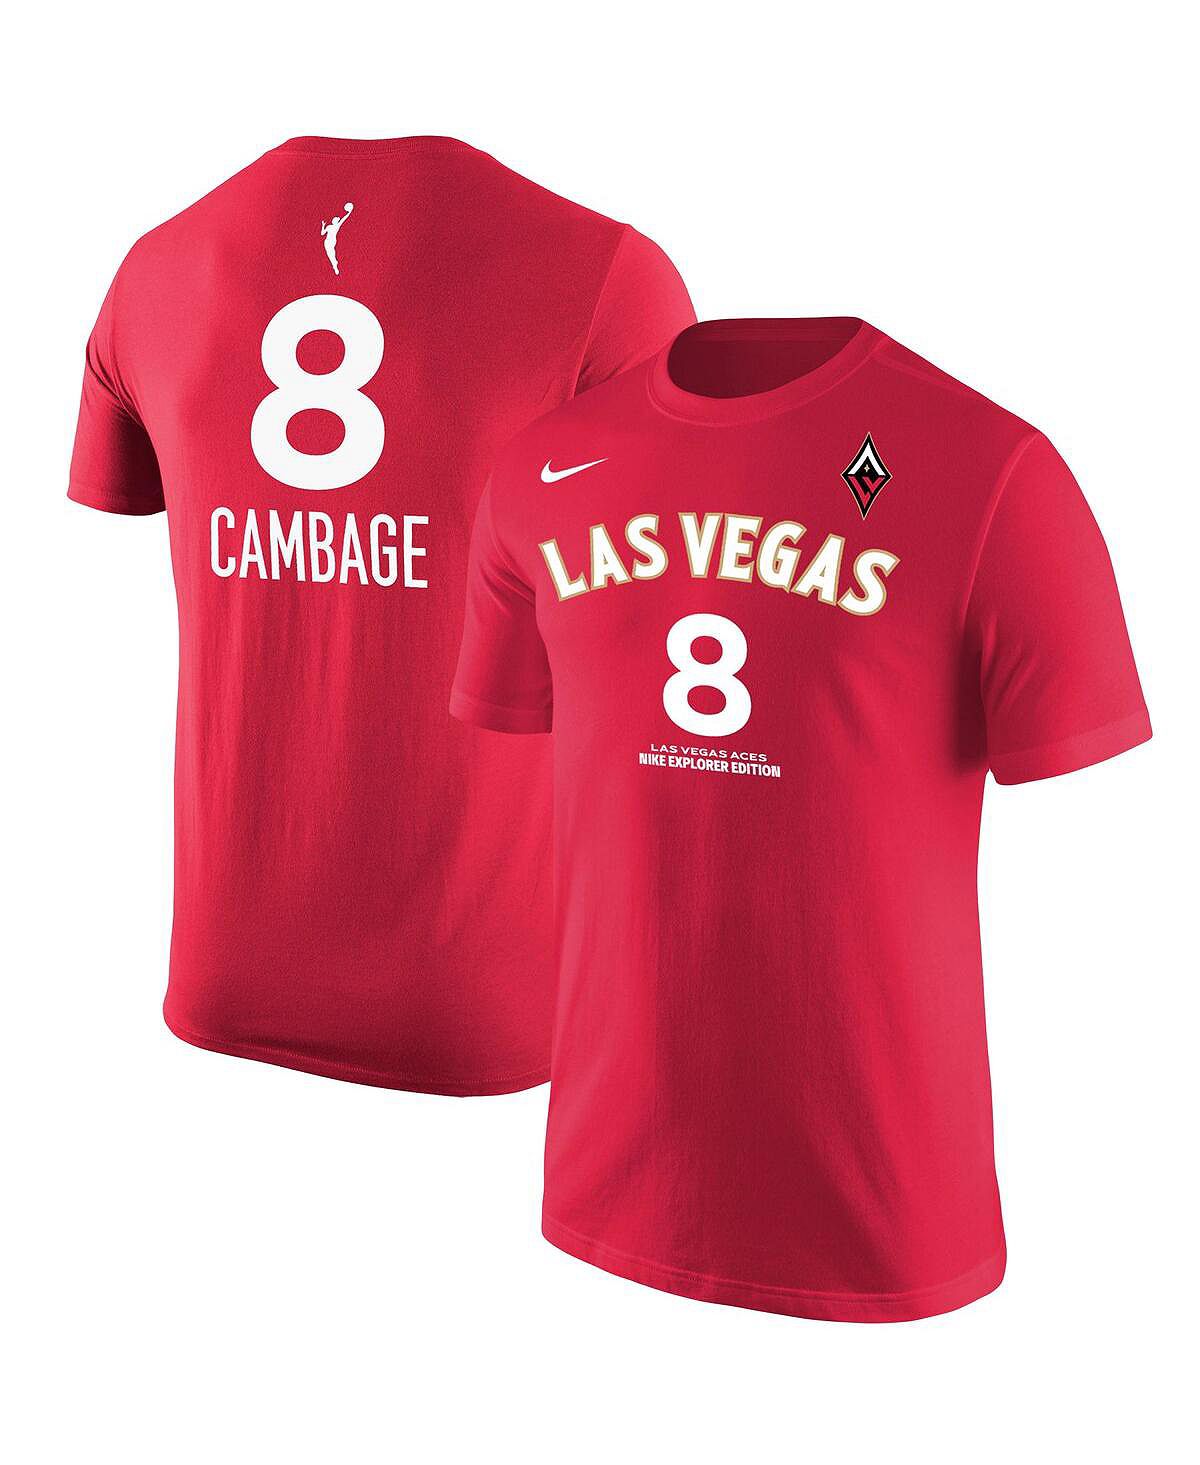 nugent liz unravelling oliver Мужская красная футболка Liz Cambage Las Vegas Aces Explorer Edition с именем и номером Nike